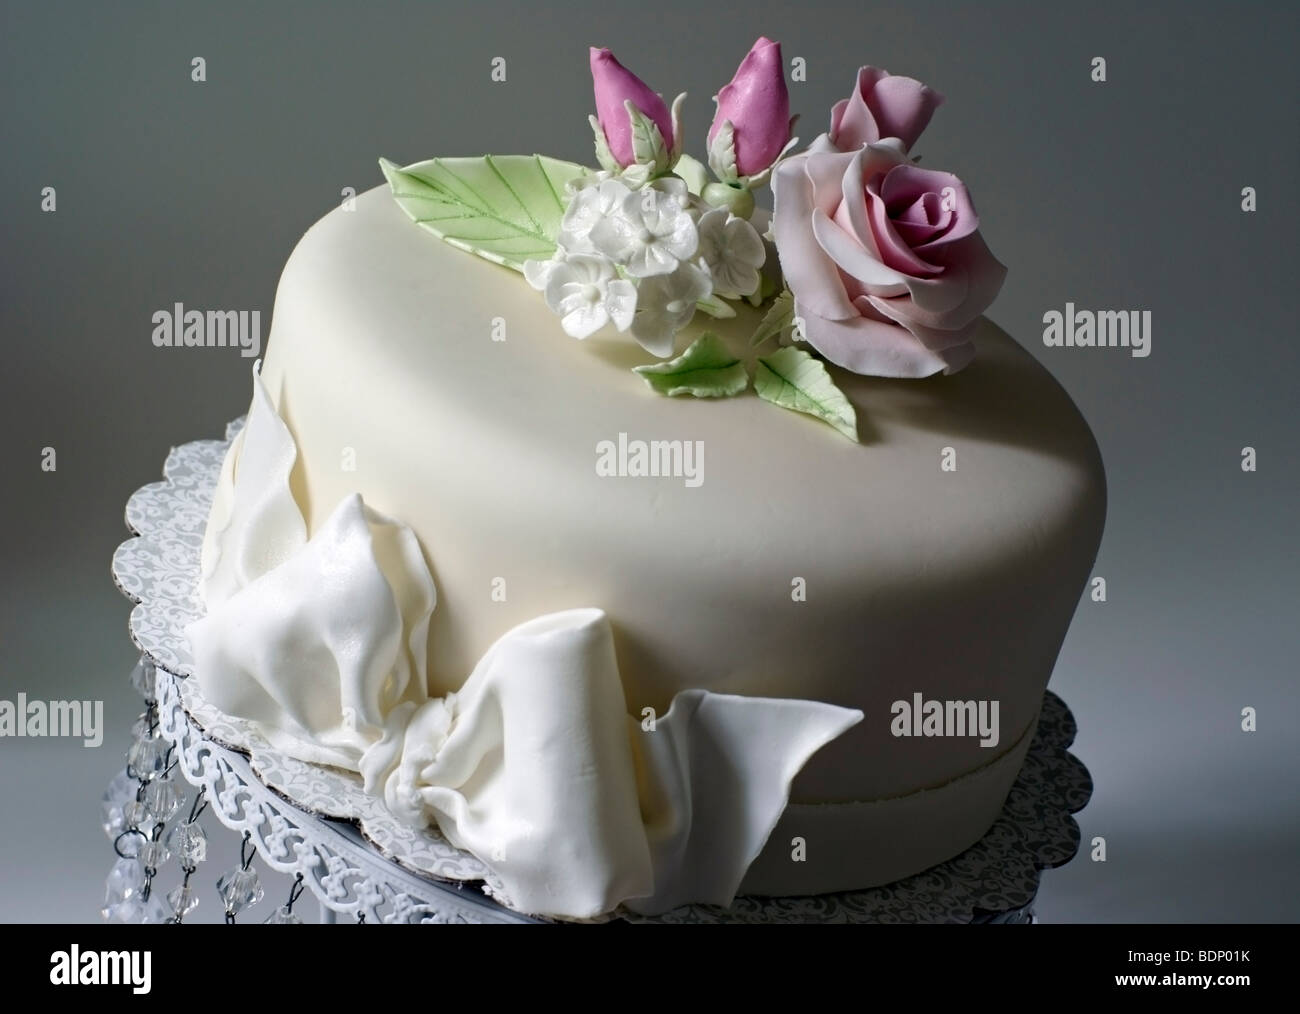 Gâteau recouvert de fondant et décoré avec des roses rose Banque D'Images